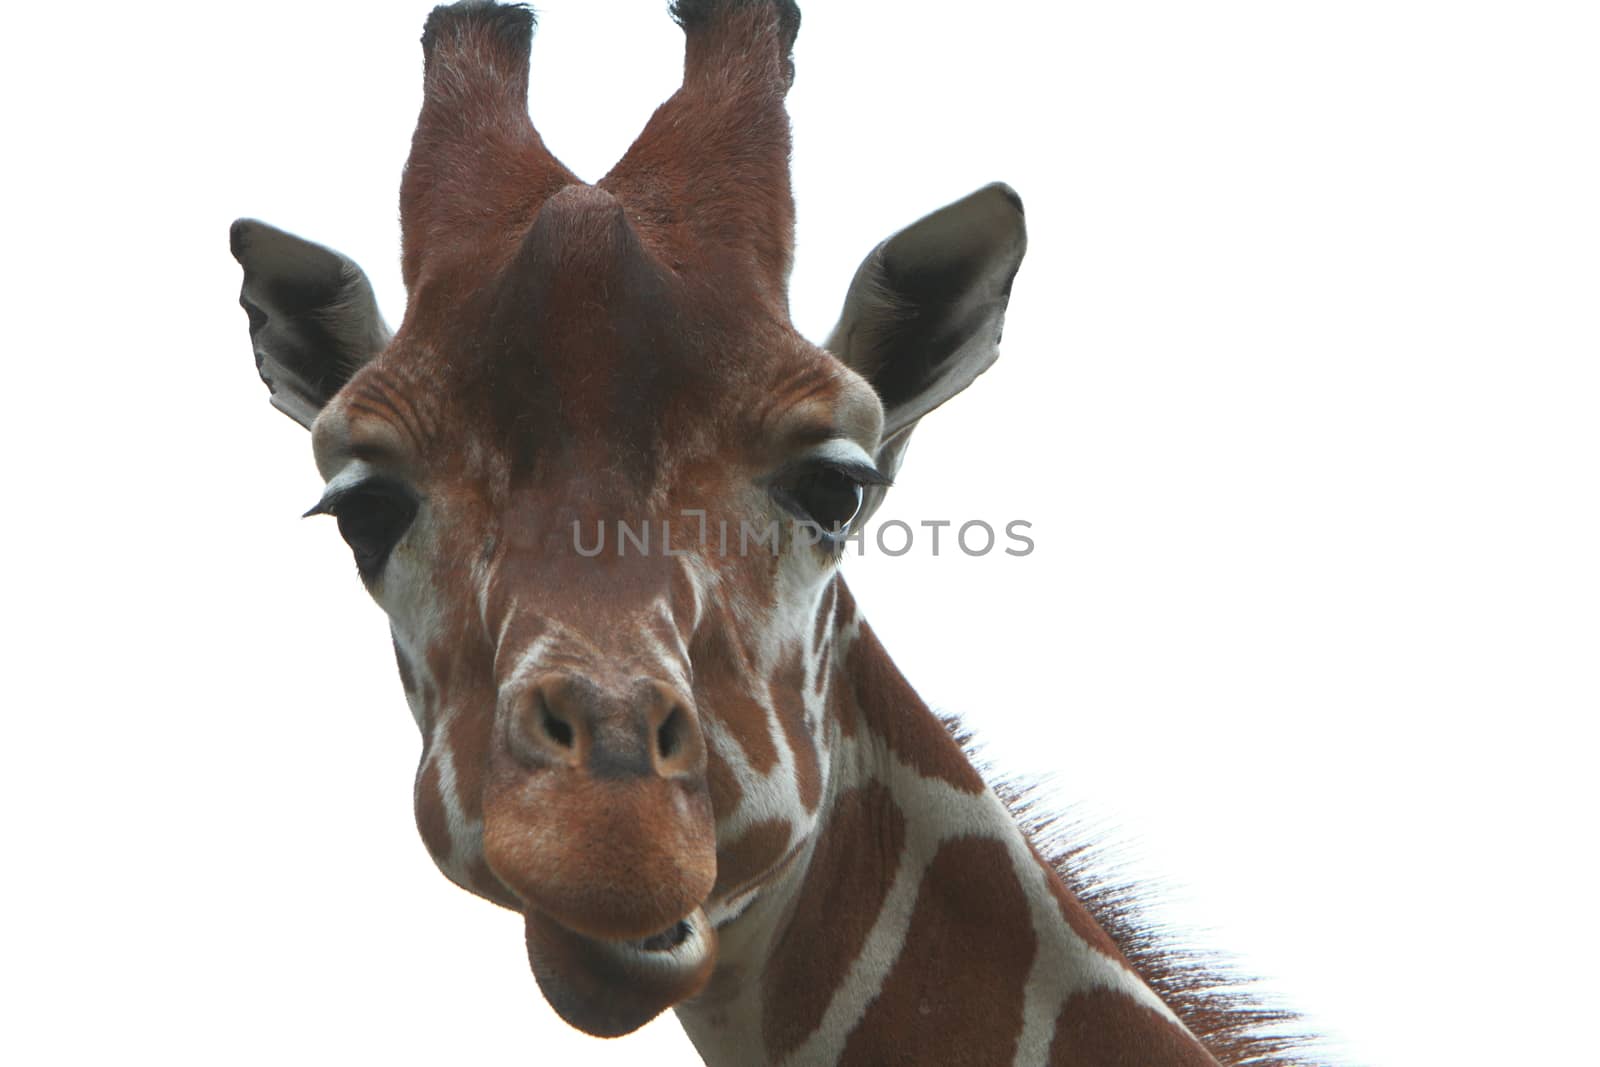 giraffe by mitzy